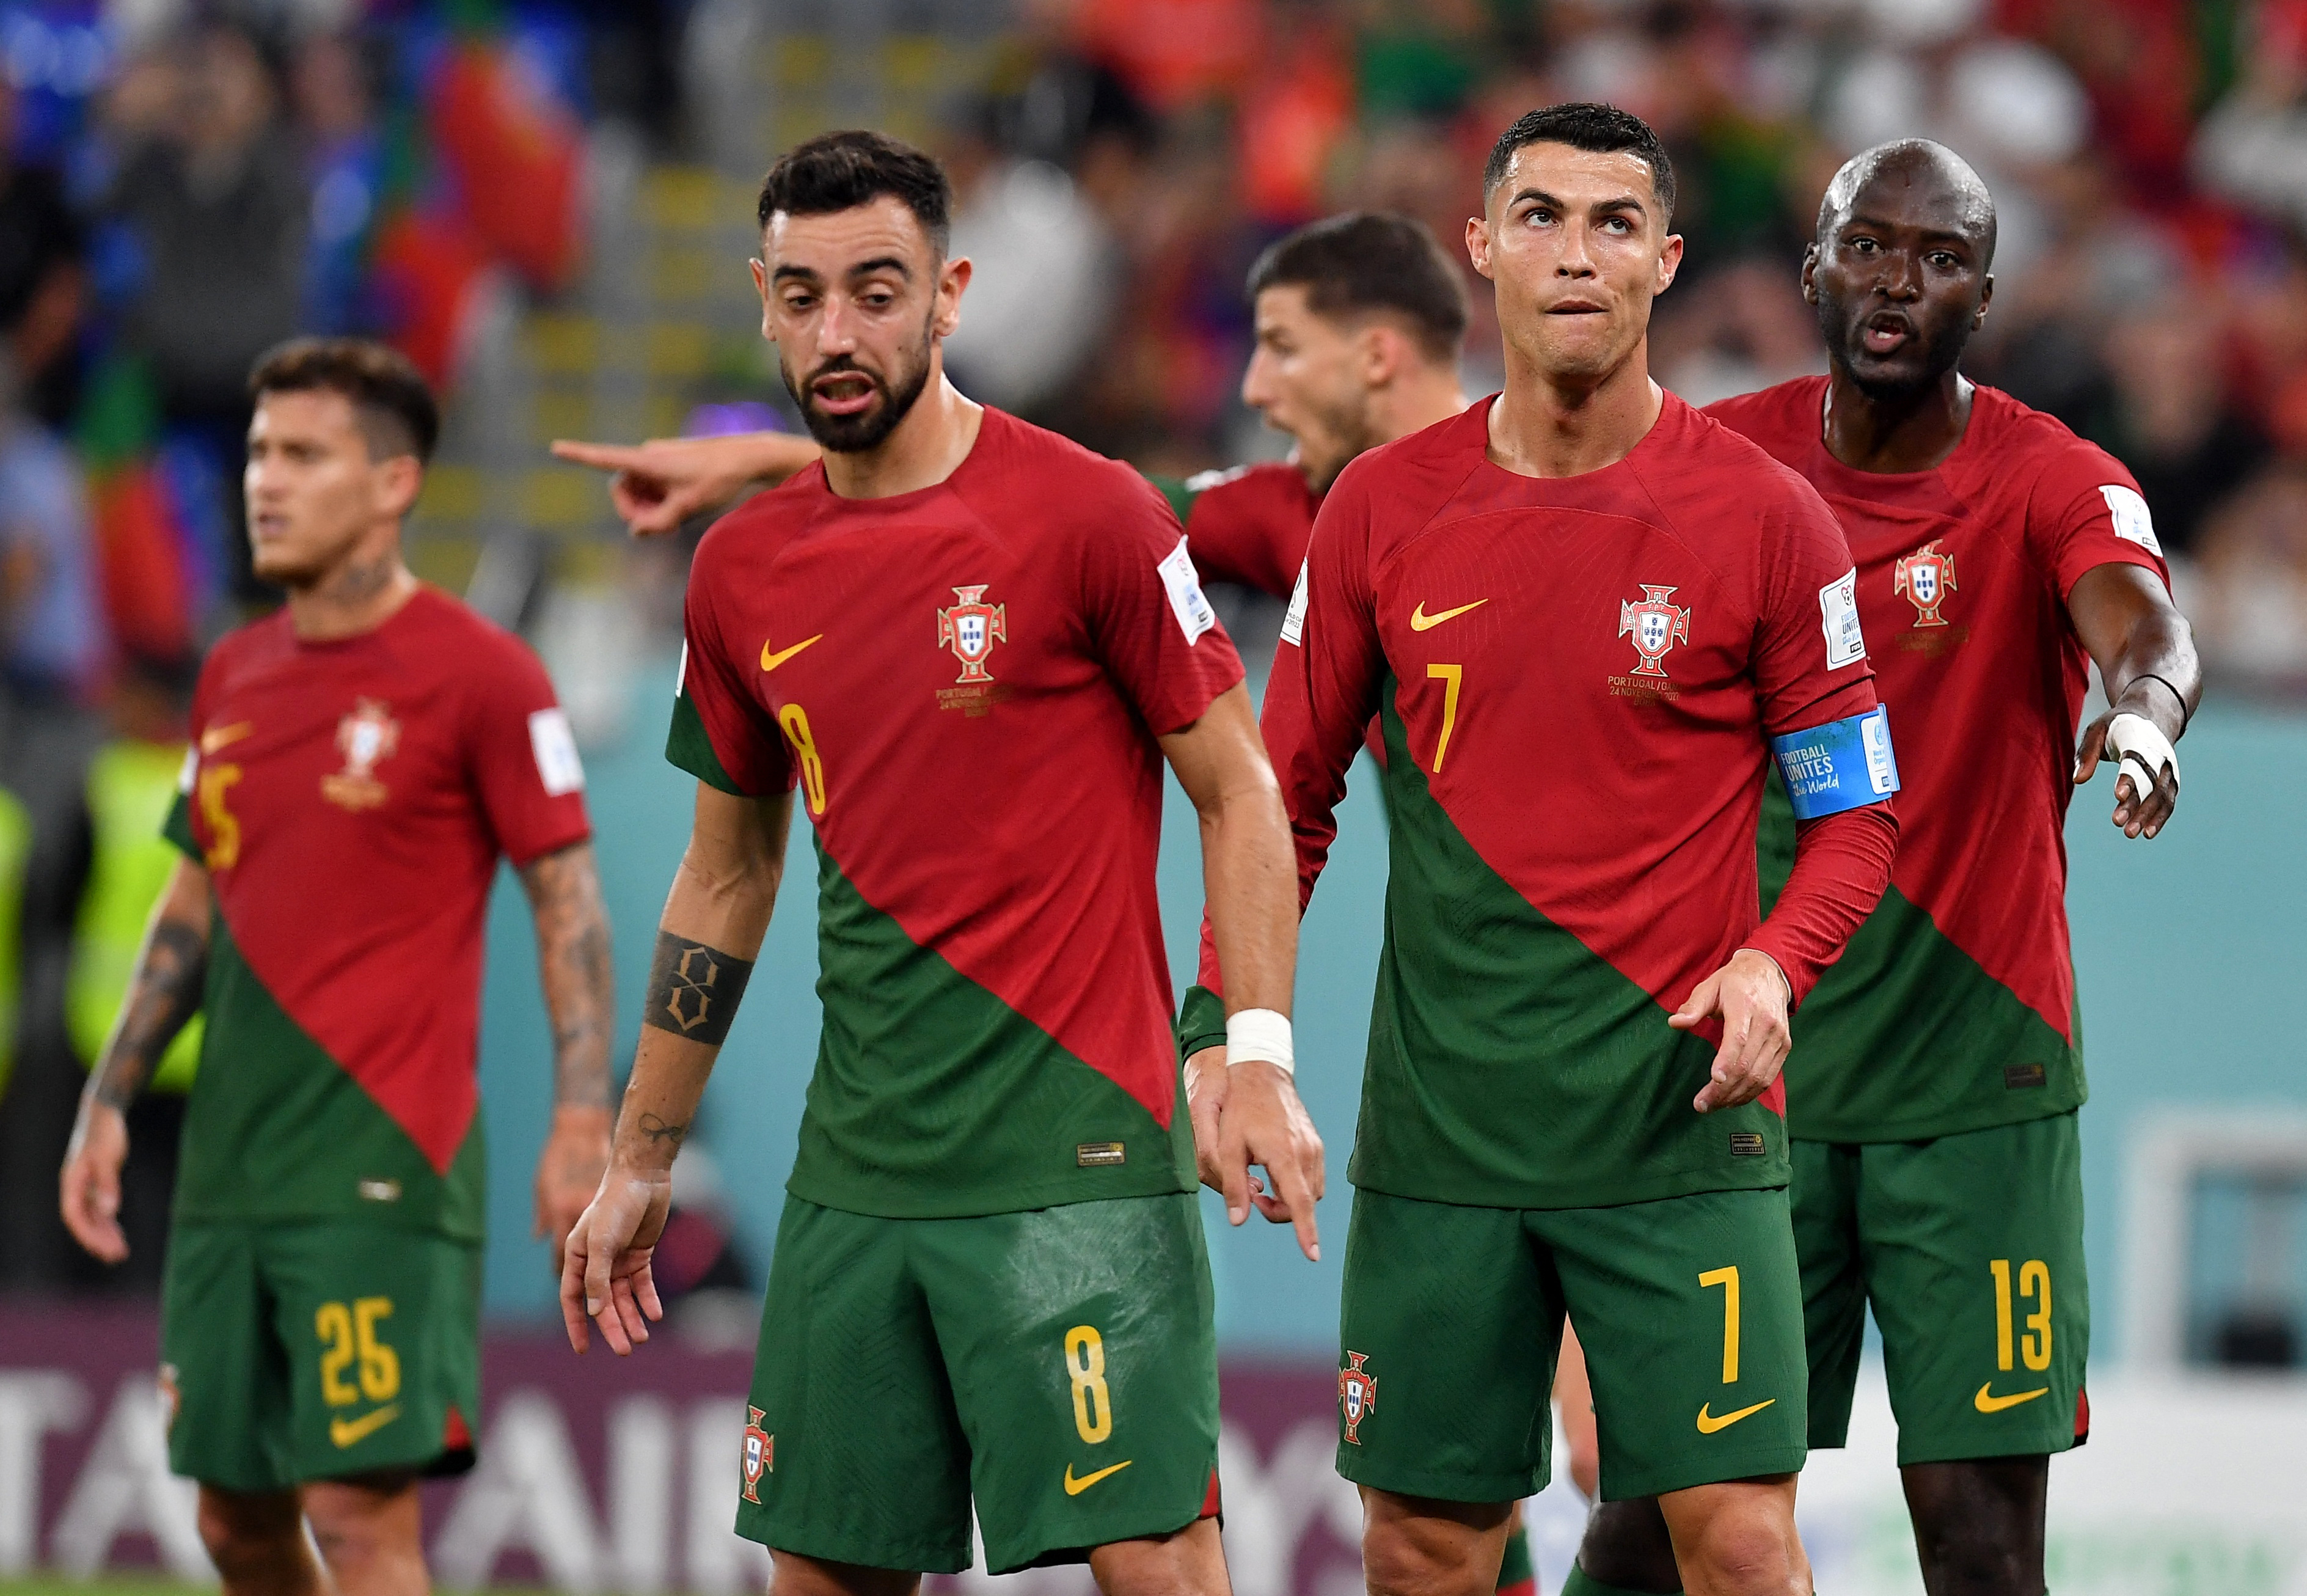 Bruno Fernandes, Cristiano Ronaldo y Danilo Pereira no se fueron conformes con el resultado. Foto: REUTERS/Jennifer Lorenzini